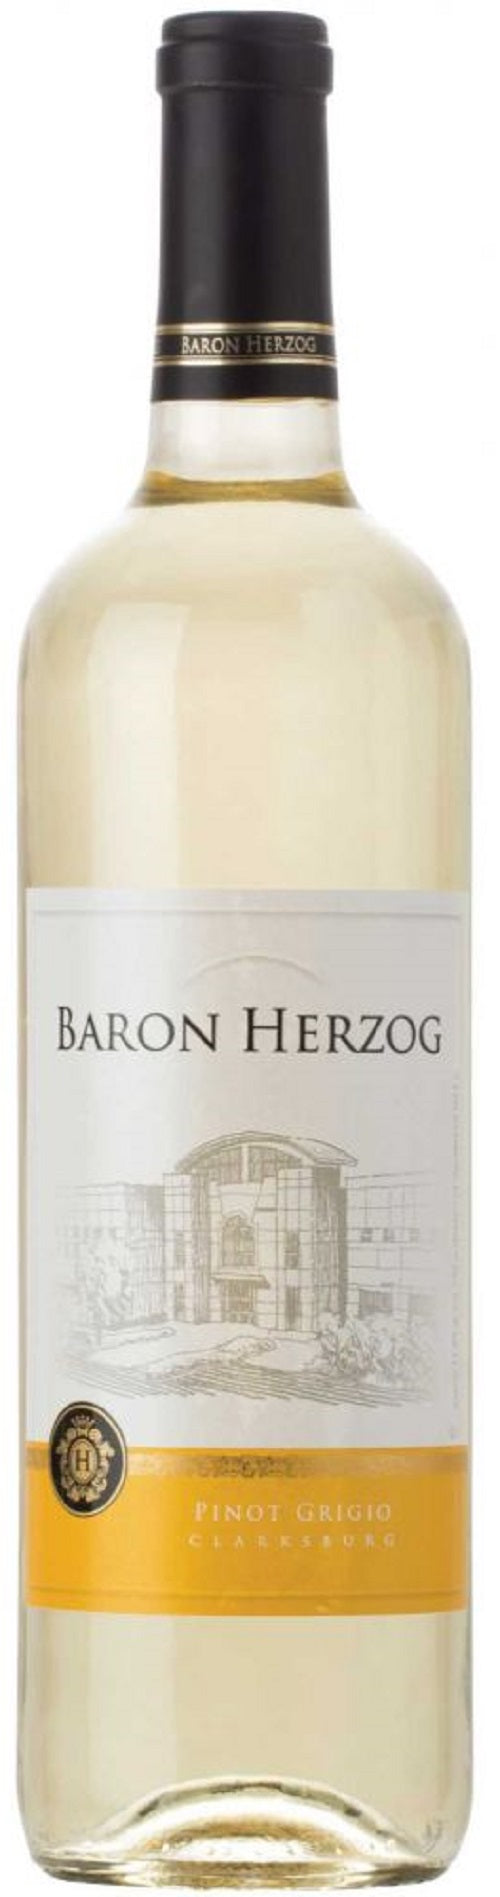 Baron Herzog Pinot Grigio 2020